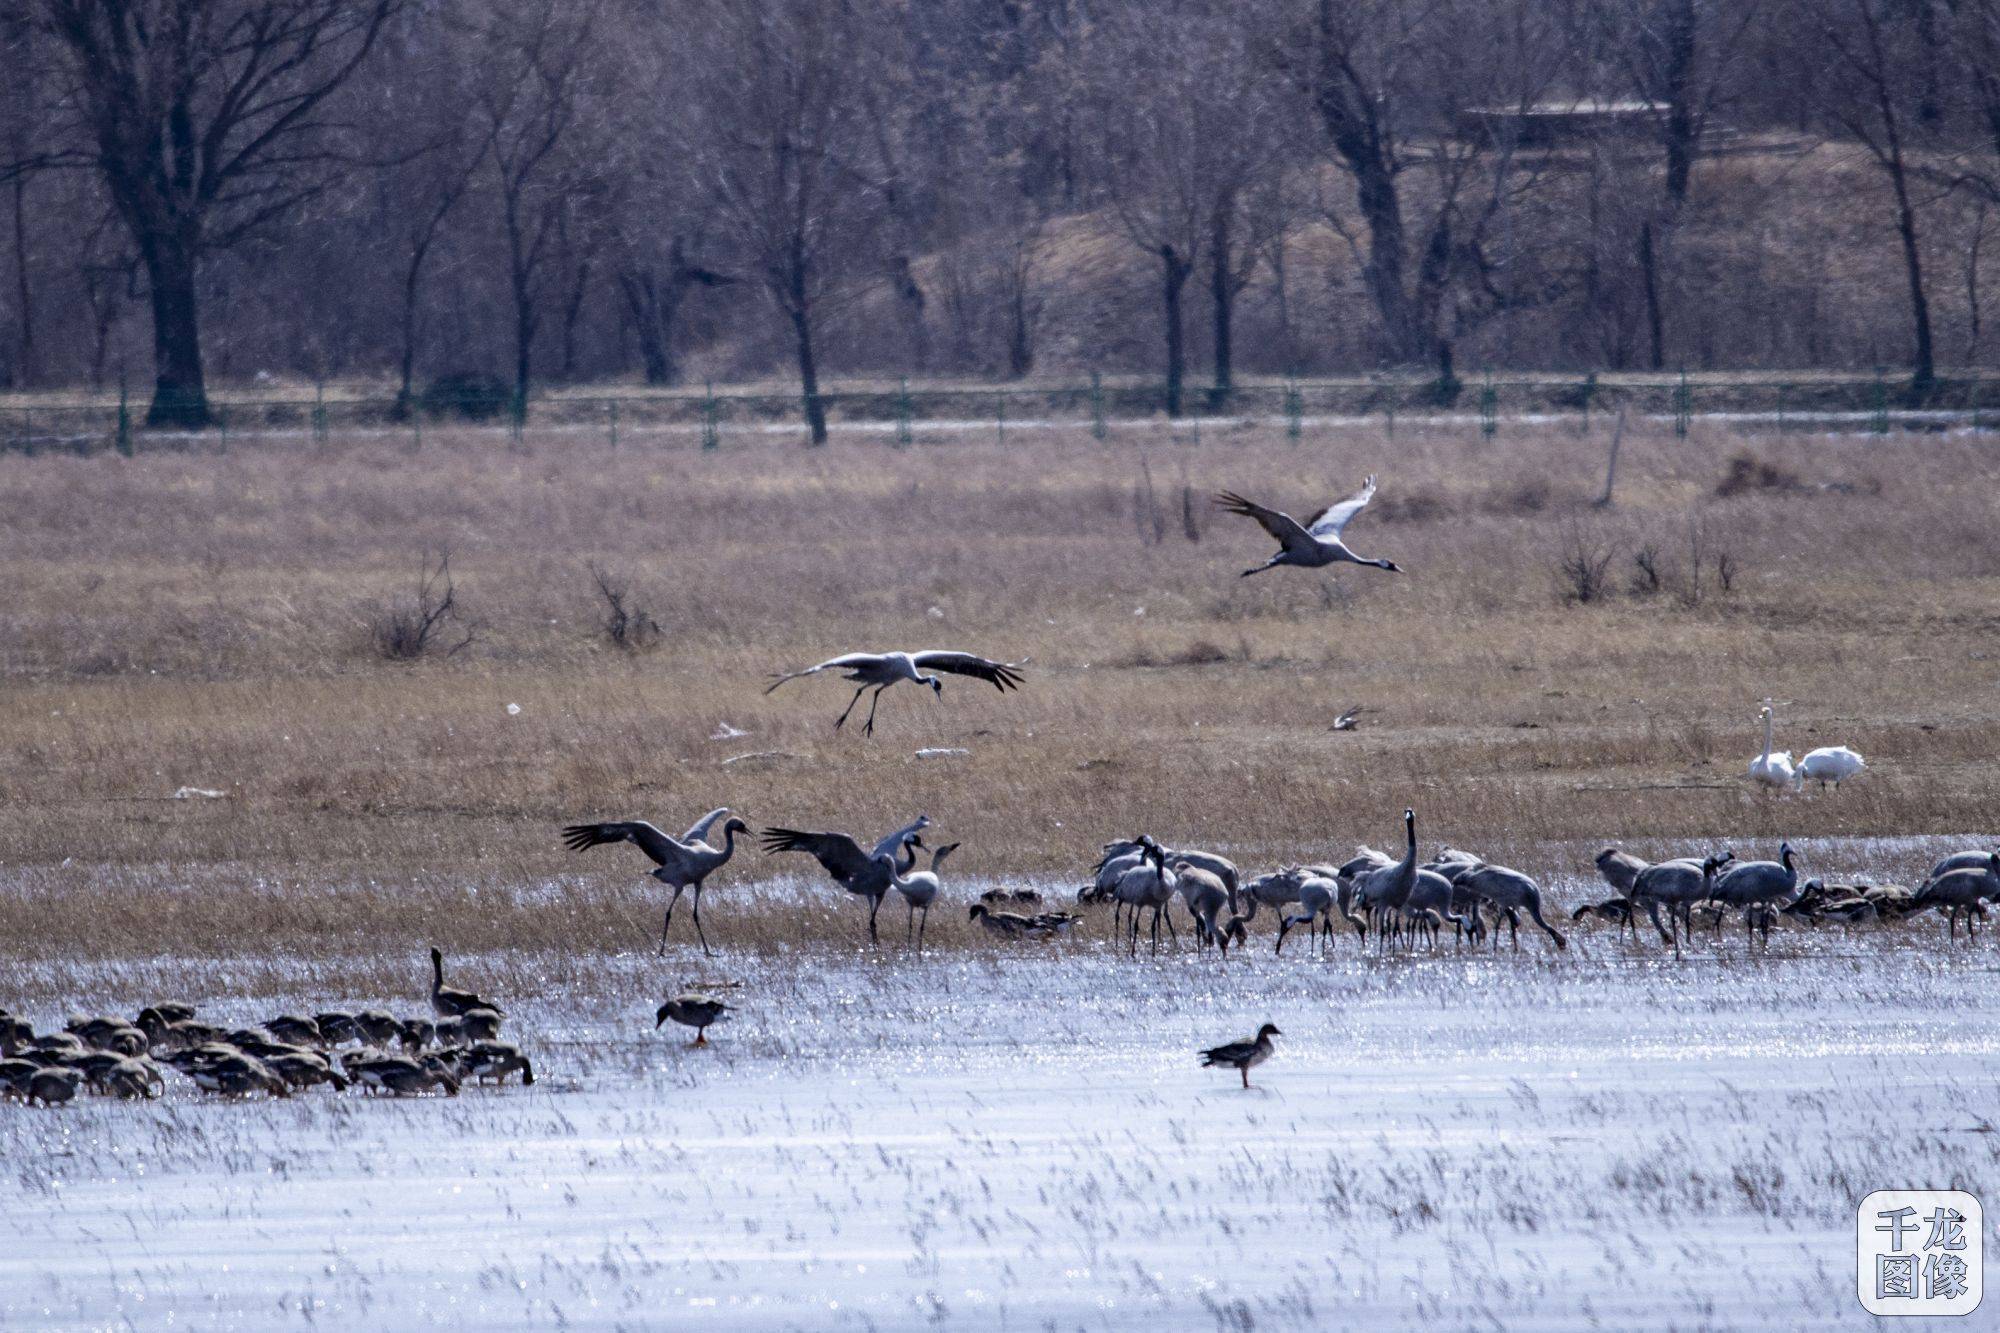 大批候鸟飞抵野鸭湖北京延庆将迎春季迁徙高峰